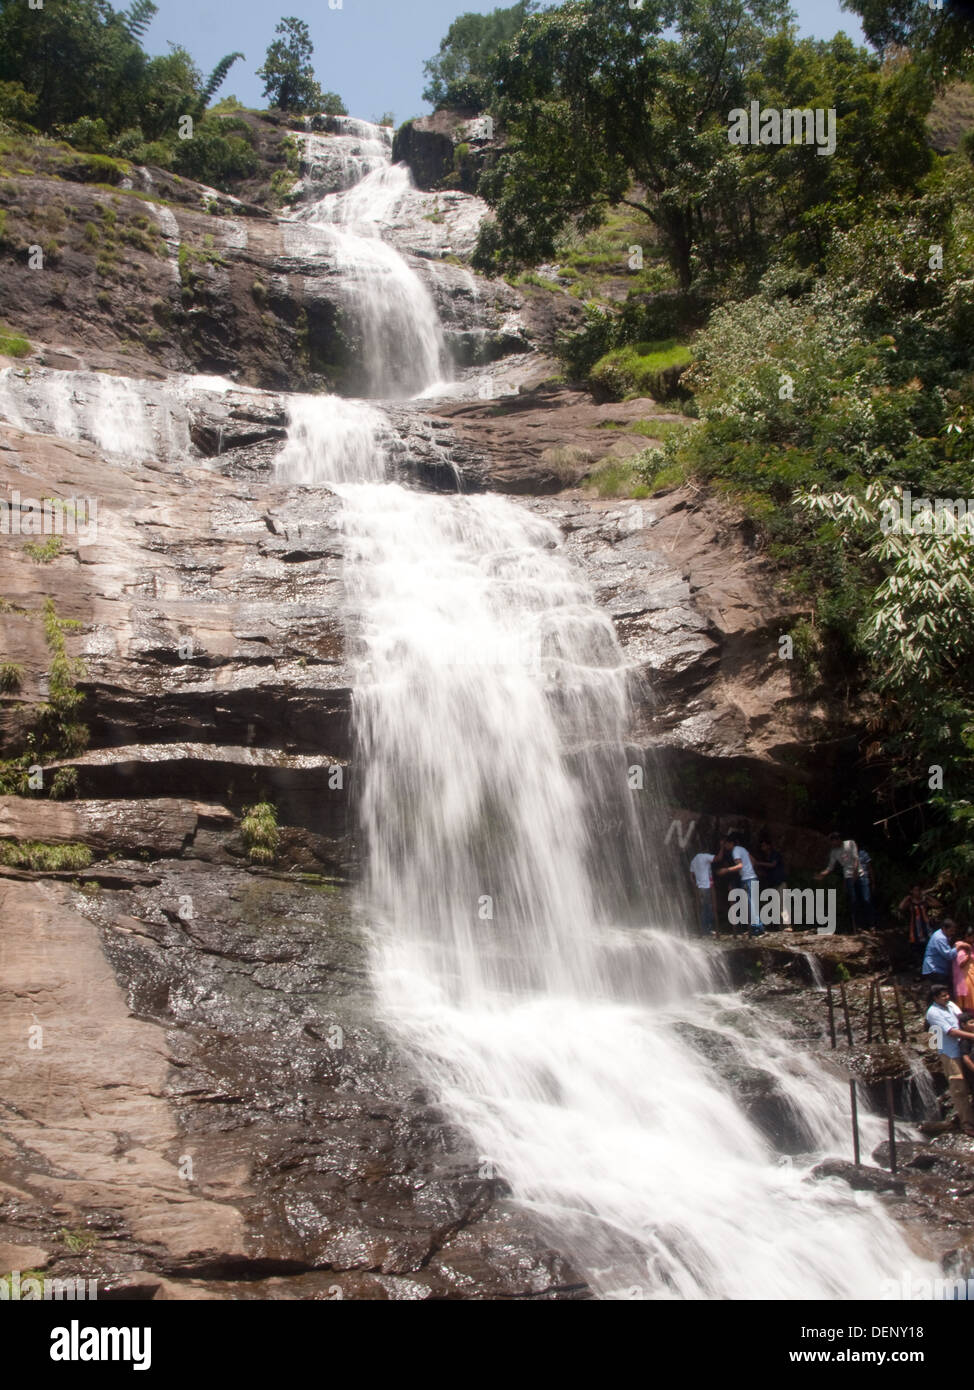 Waterfall in Kerala, India Stock Photo